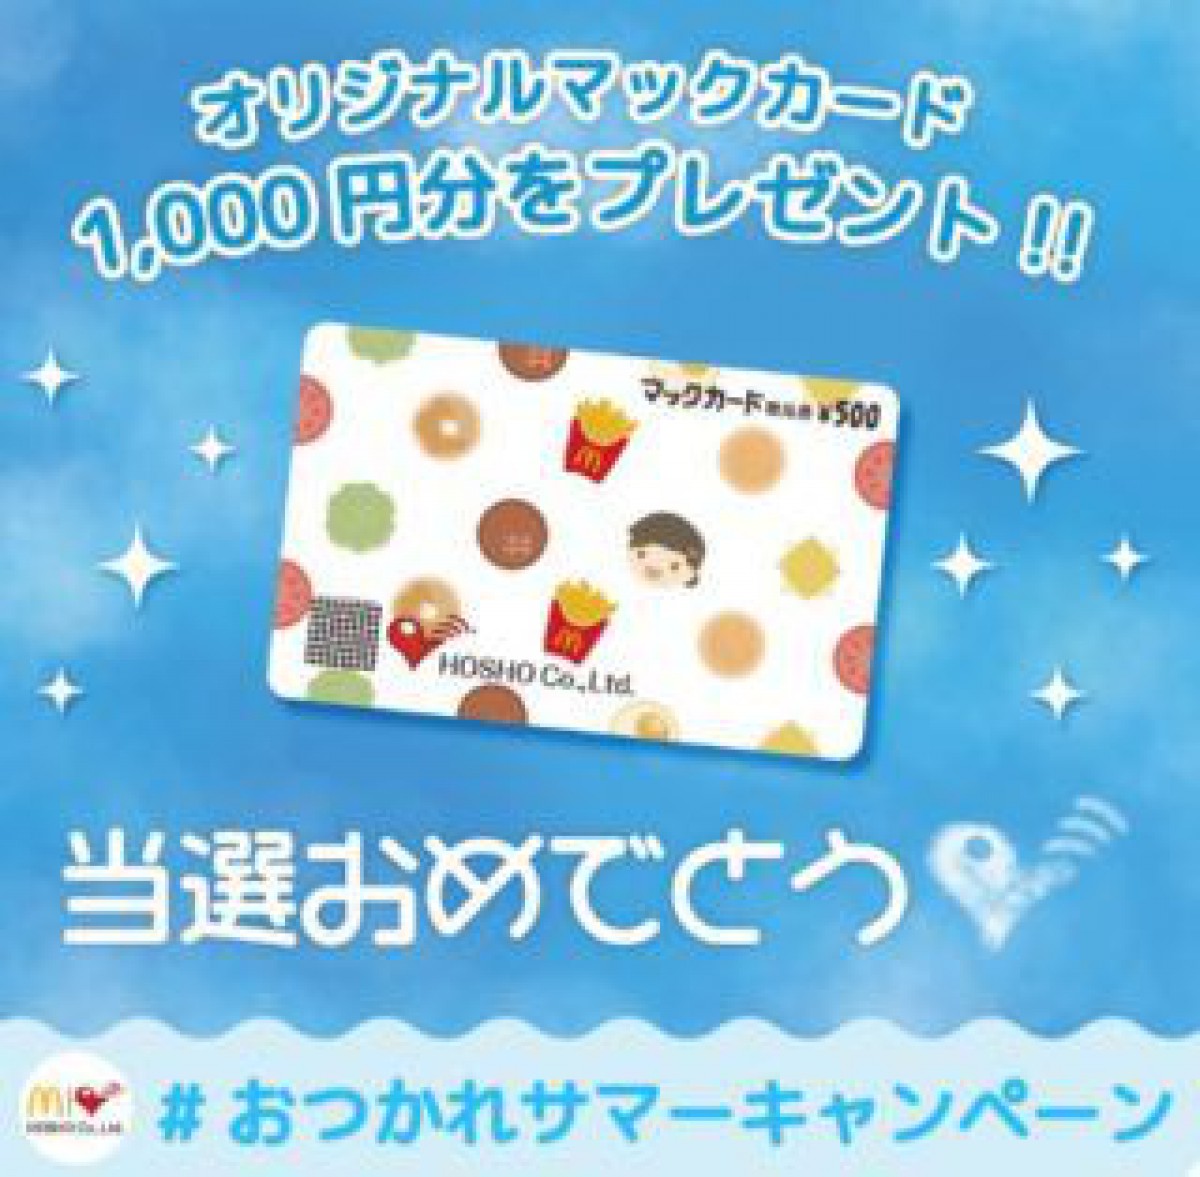 マクドナルドFC豊昇のTwitter懸賞で「マックカード1,000円分」が当選しました☆